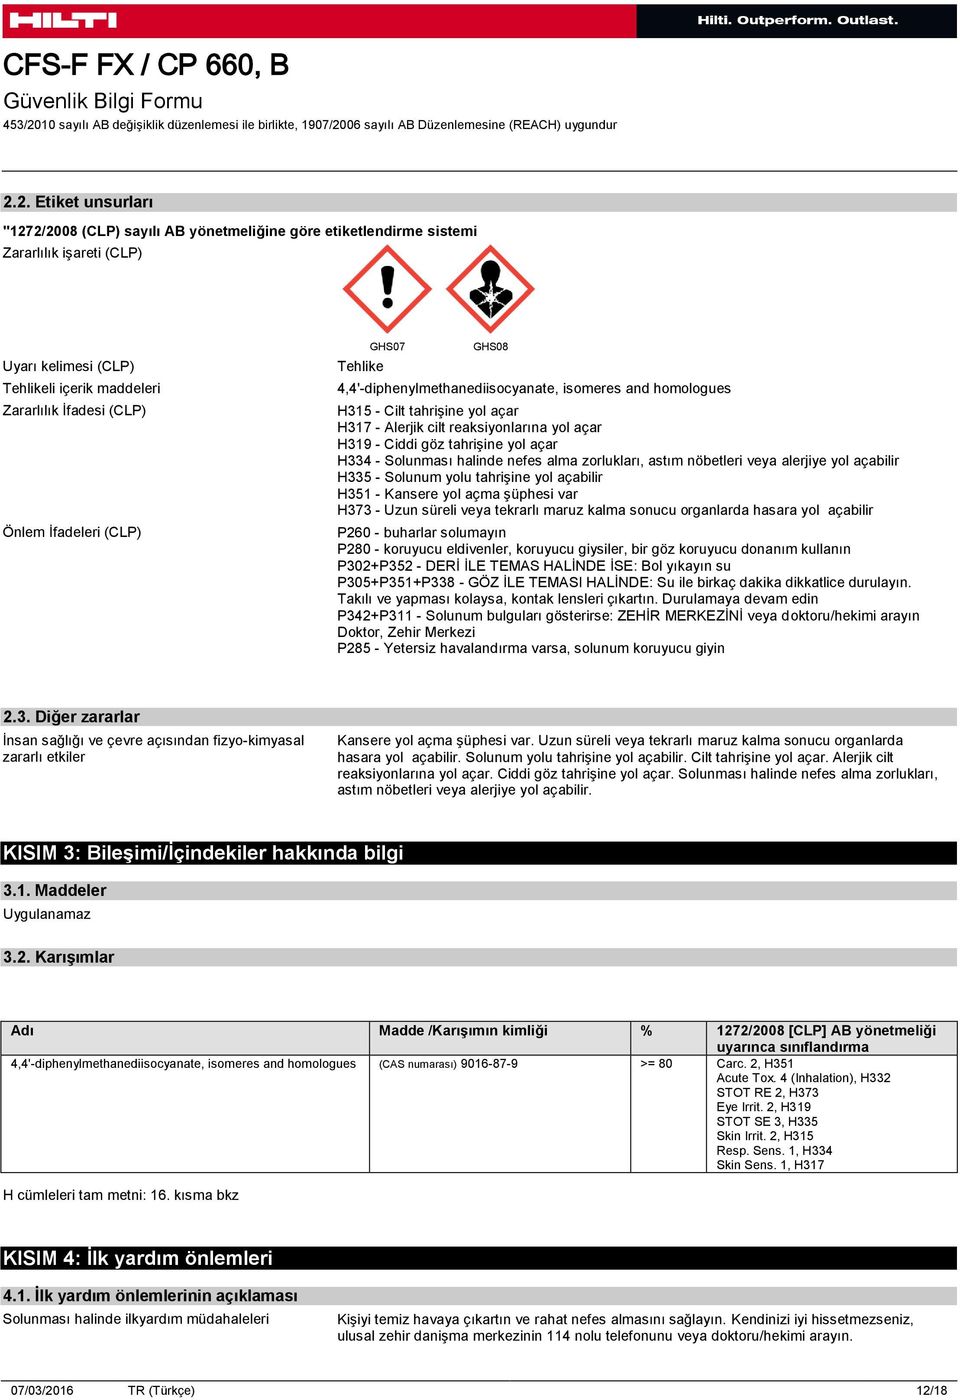 Tehlikeli içerik maddeleri Zararlılık İfadesi (CLP) Önlem İfadeleri (CLP) Tehlike GHS07 GHS08 4,4'-diphenylmethanediisocyanate, isomeres and homologues H315 - Cilt tahrişine yol açar H317 - Alerjik